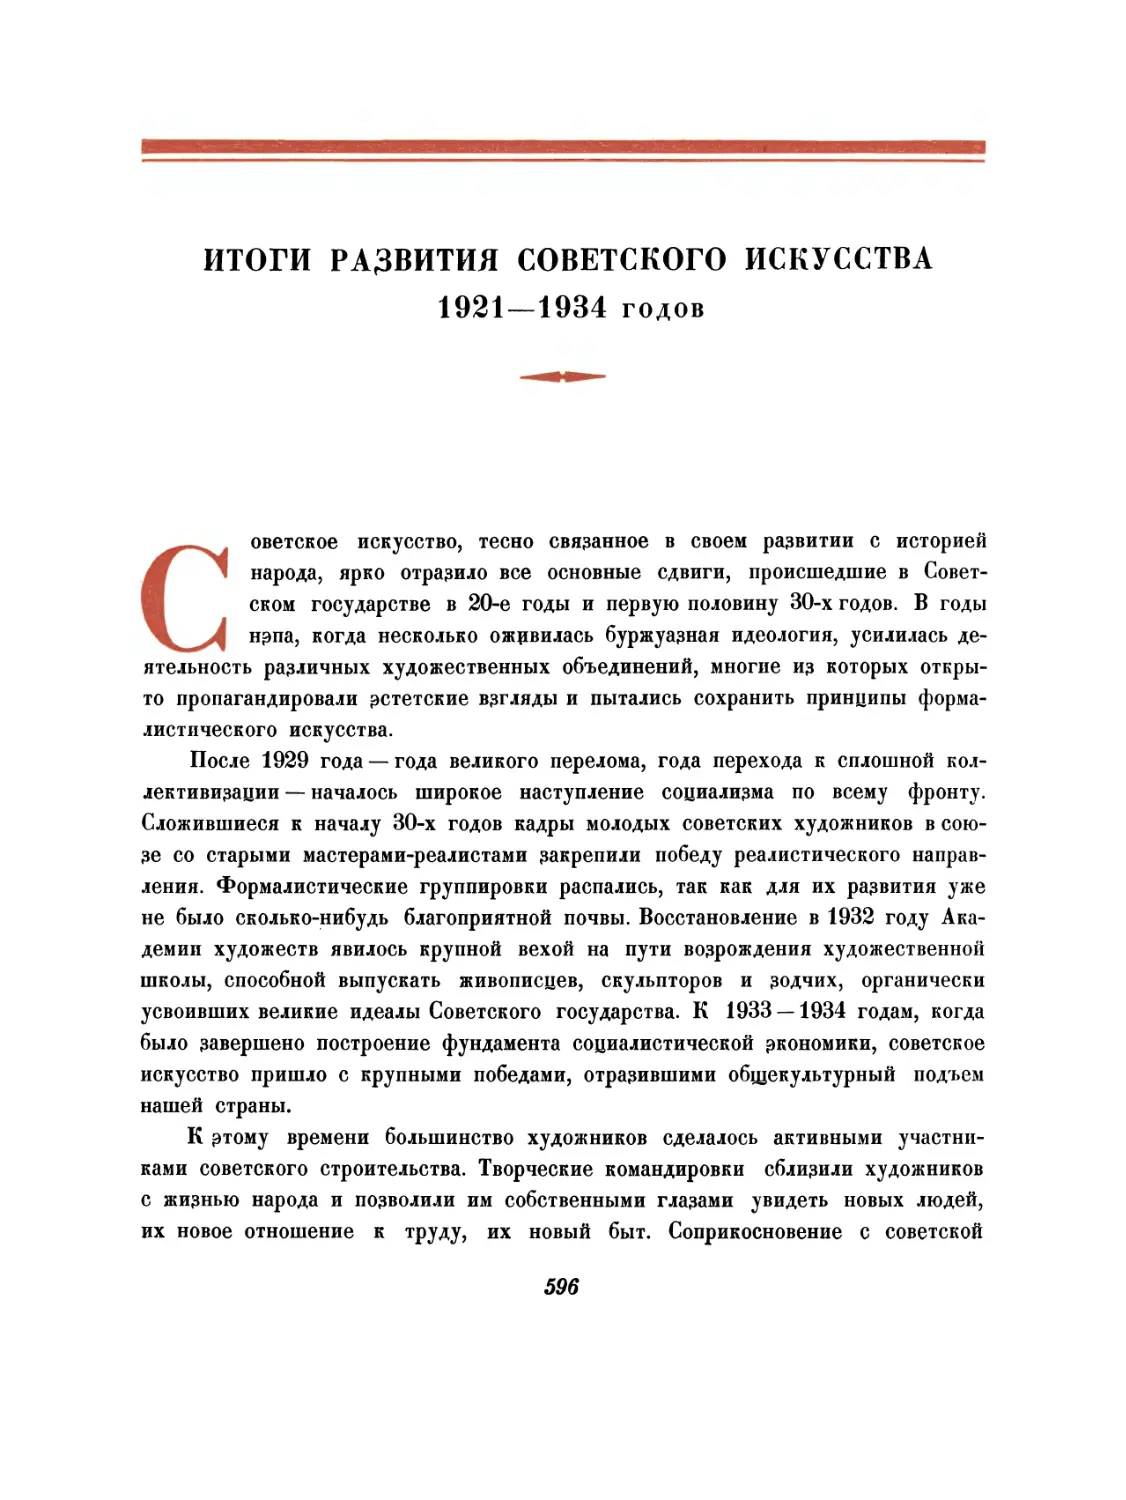 Итоги развития советского искусства 1921—1934 годов